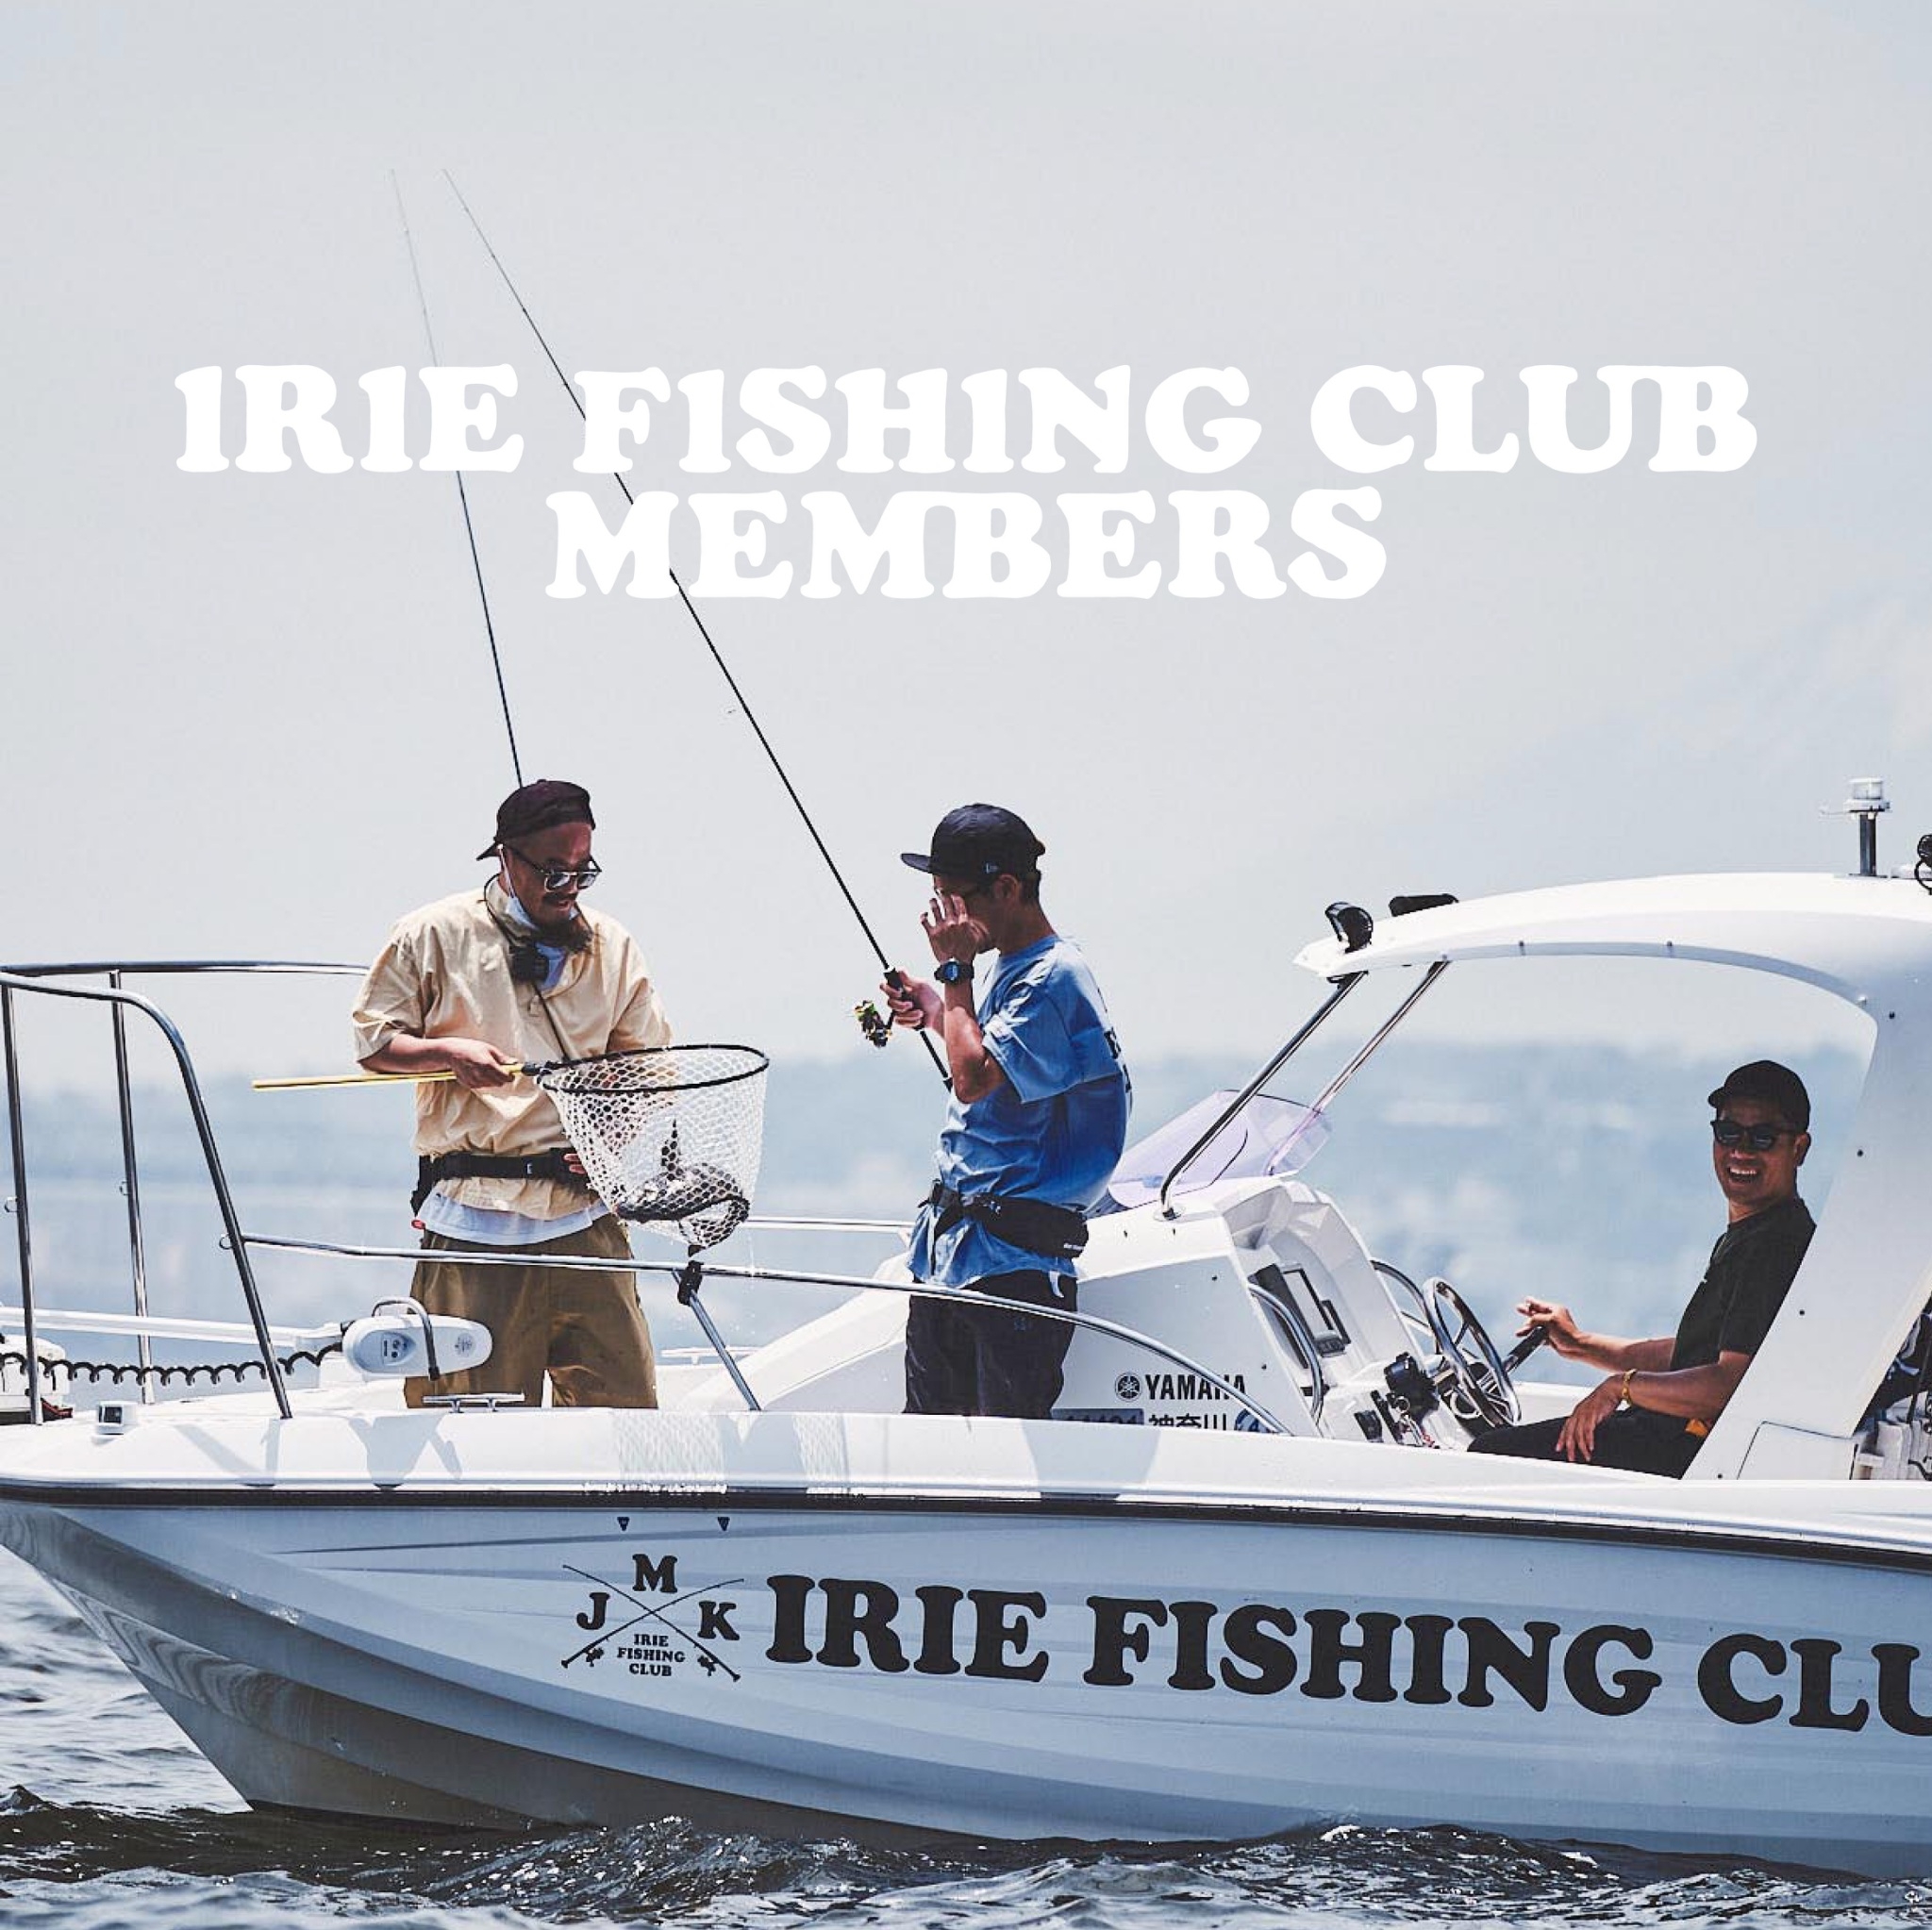 IRIE FISHING CLUB MEMBERS 2022 募集のお知らせ | IRIE FISHING CLUB